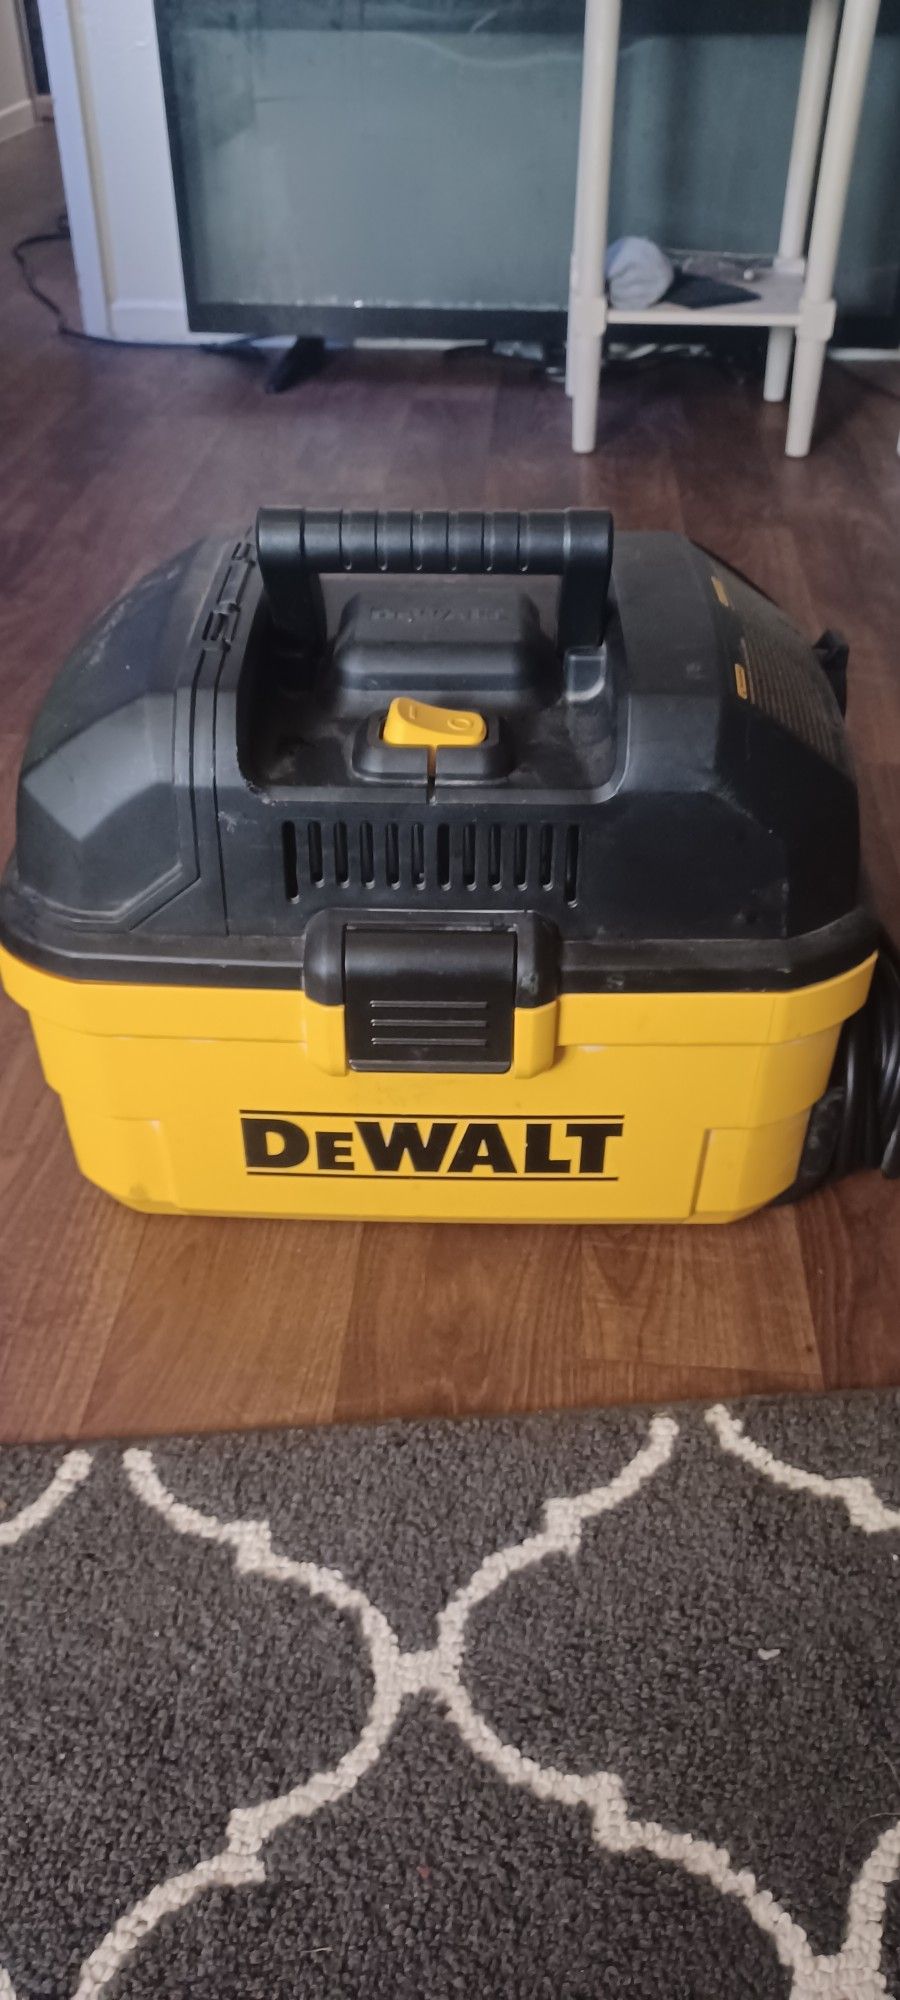 DEWALT DXV04T Portable 4 gallon Wet/Dry Vaccum

